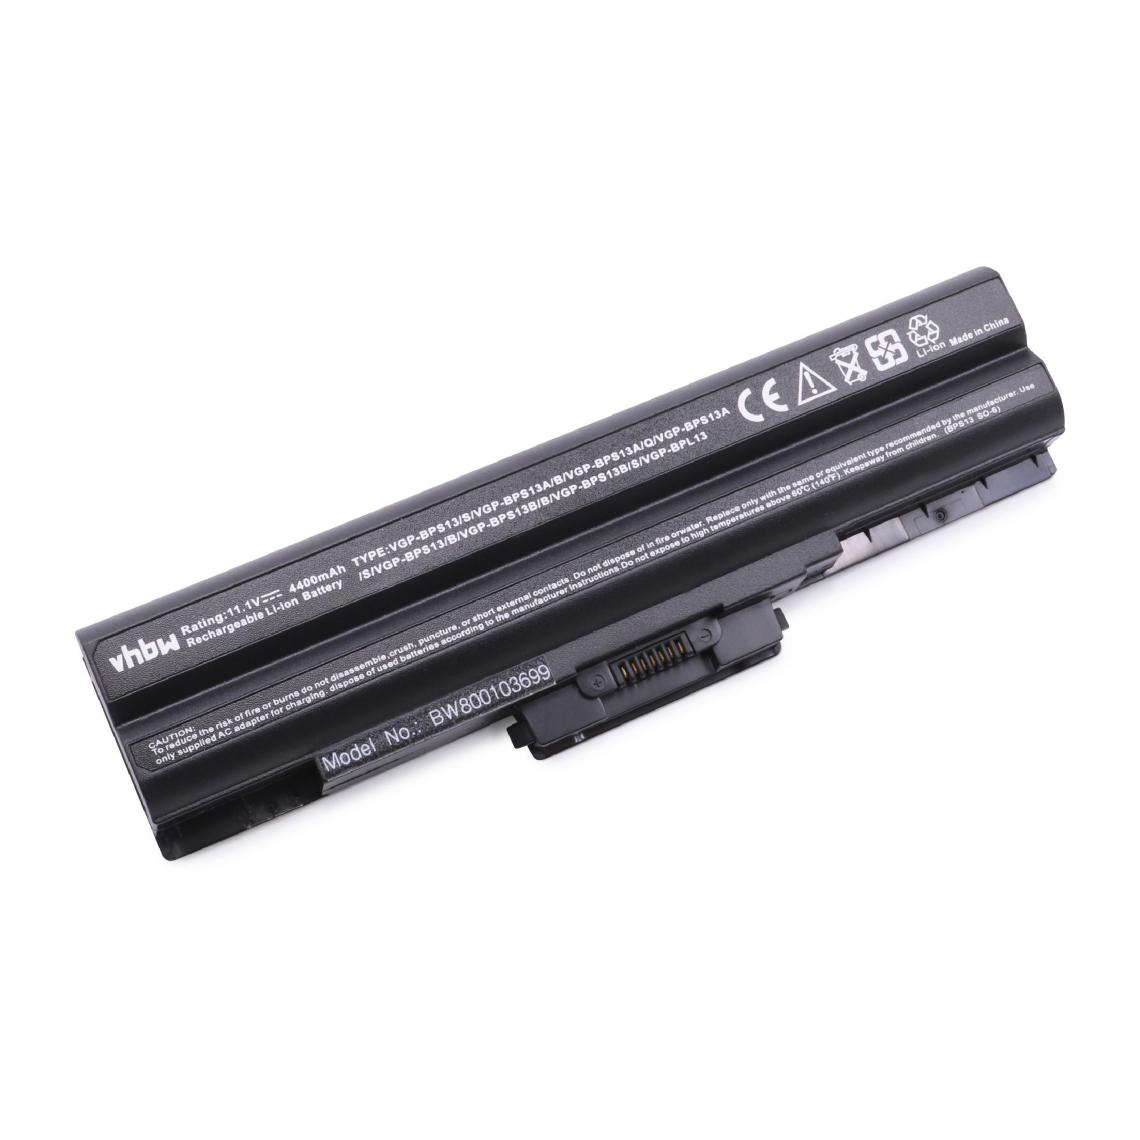 Vhbw - vhbw Batterie compatible avec Sony Vaio VGN-SR26/S, VGN-SR26GN/B, VGN-SR26MN/B, VGN-SR27TN/B ordinateur portable (4400mAh, 11,1V, noir) - Batterie PC Portable